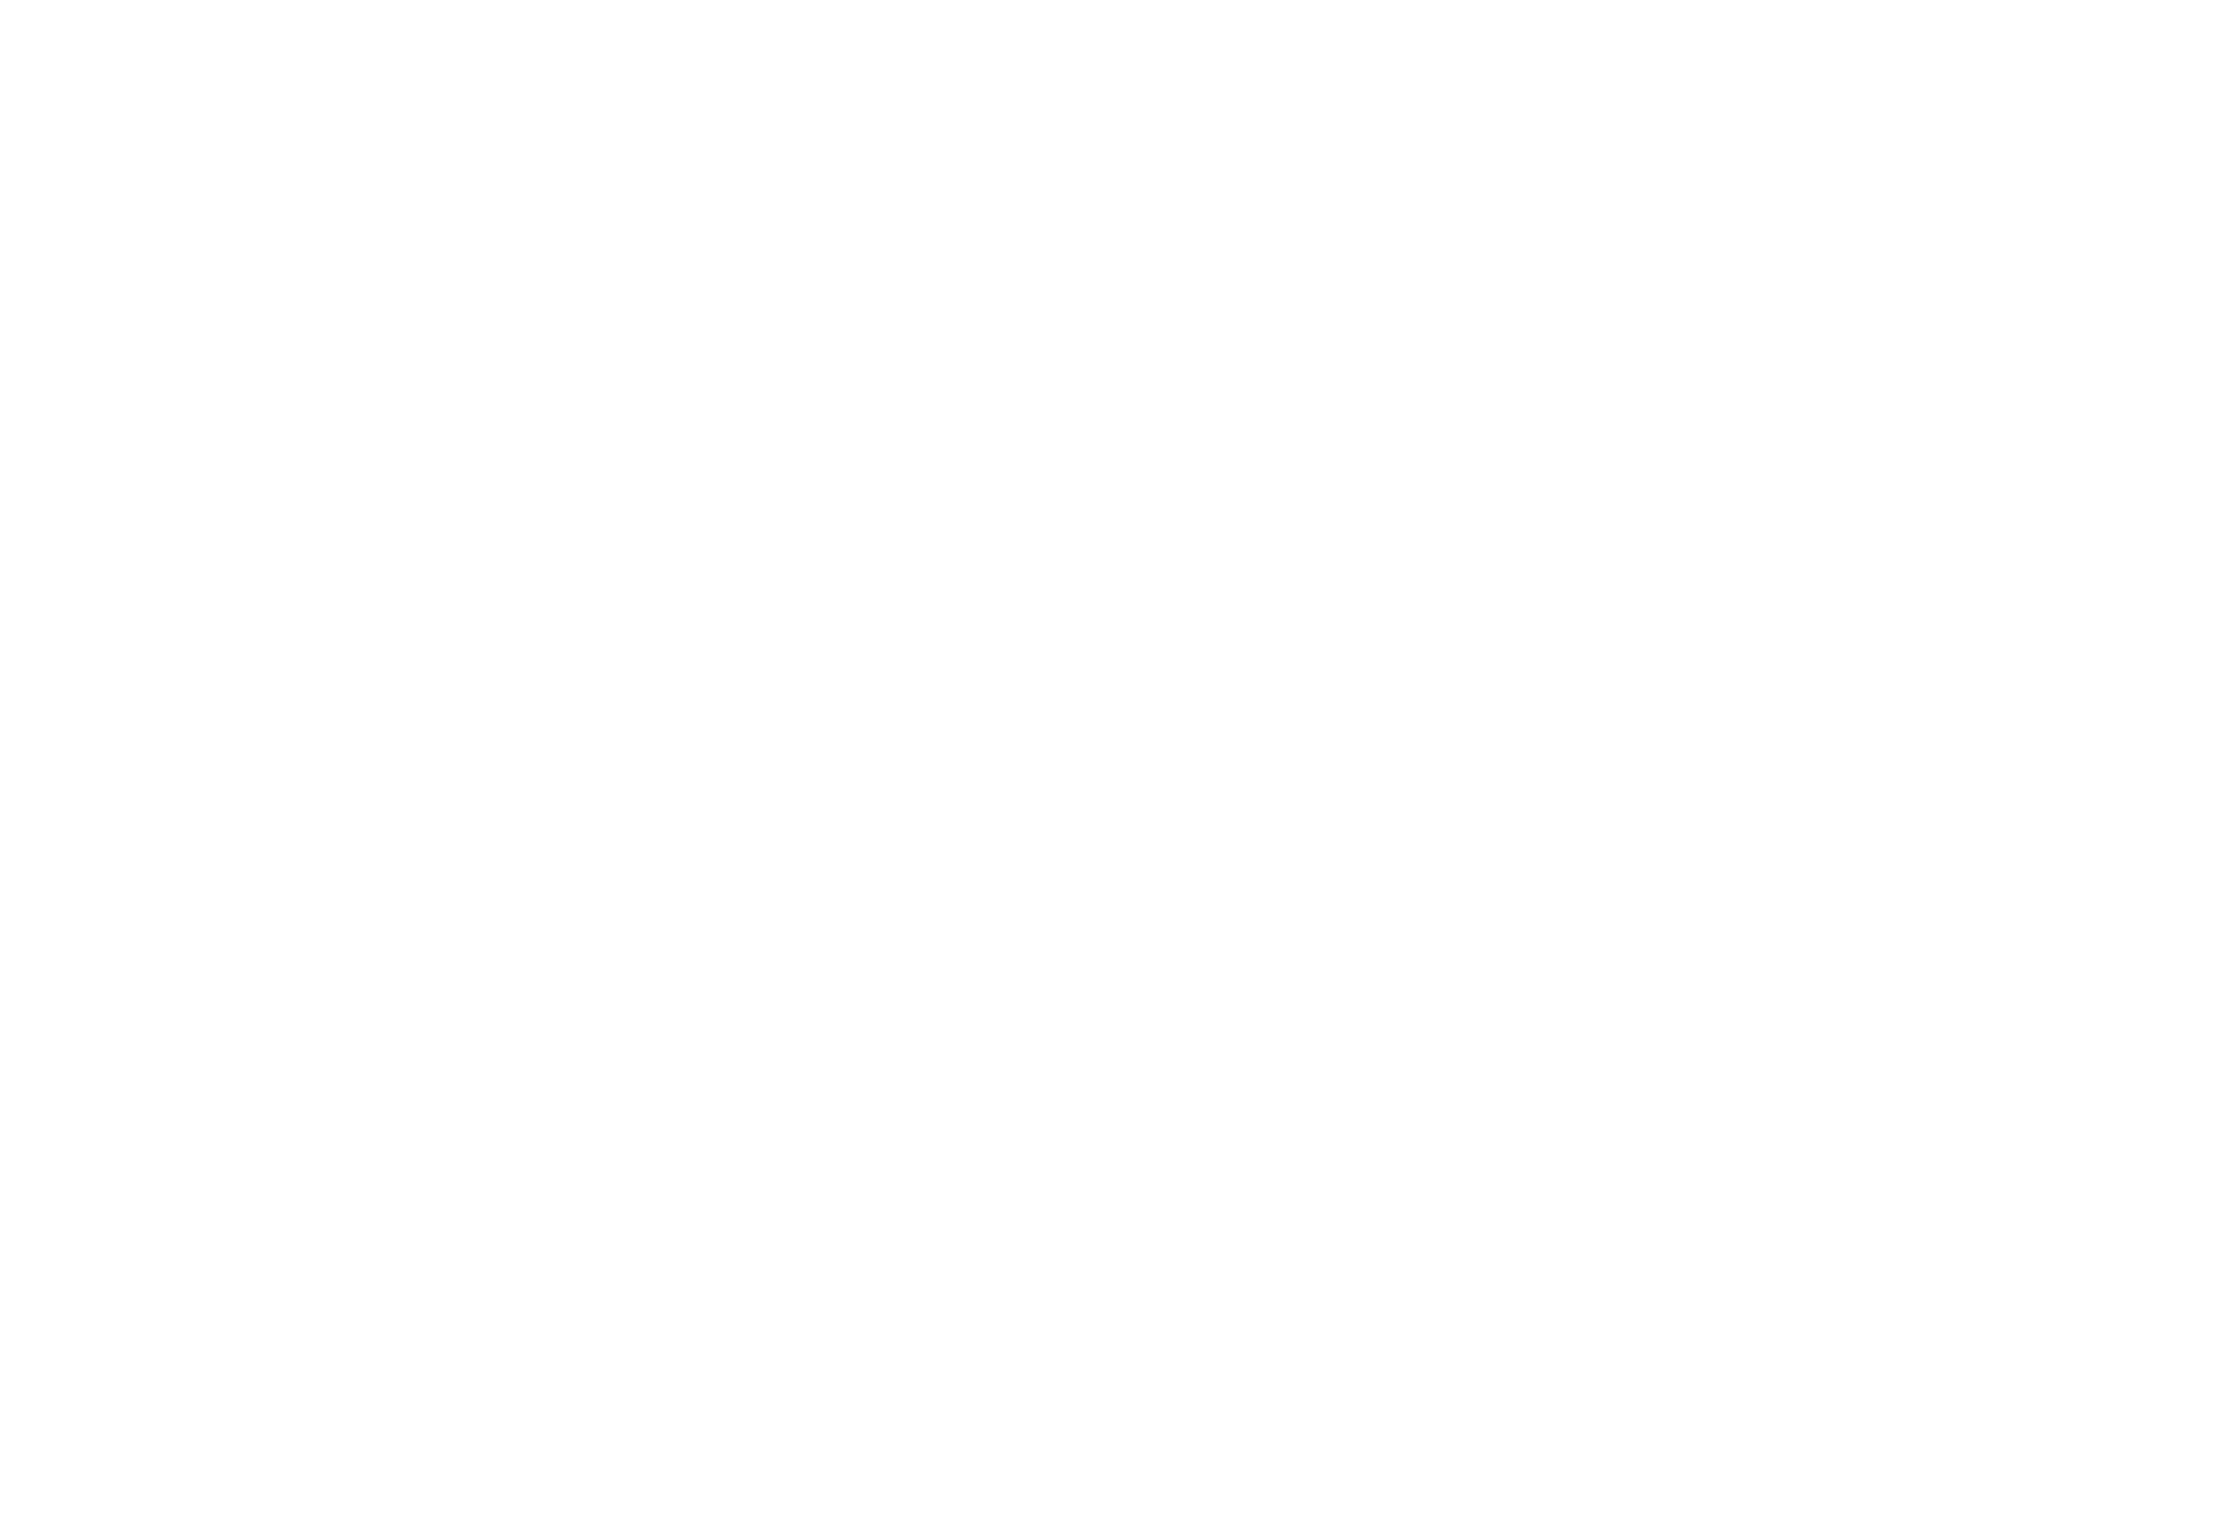 Acuerdo de 4 años entre Daedo y RFEJYDA